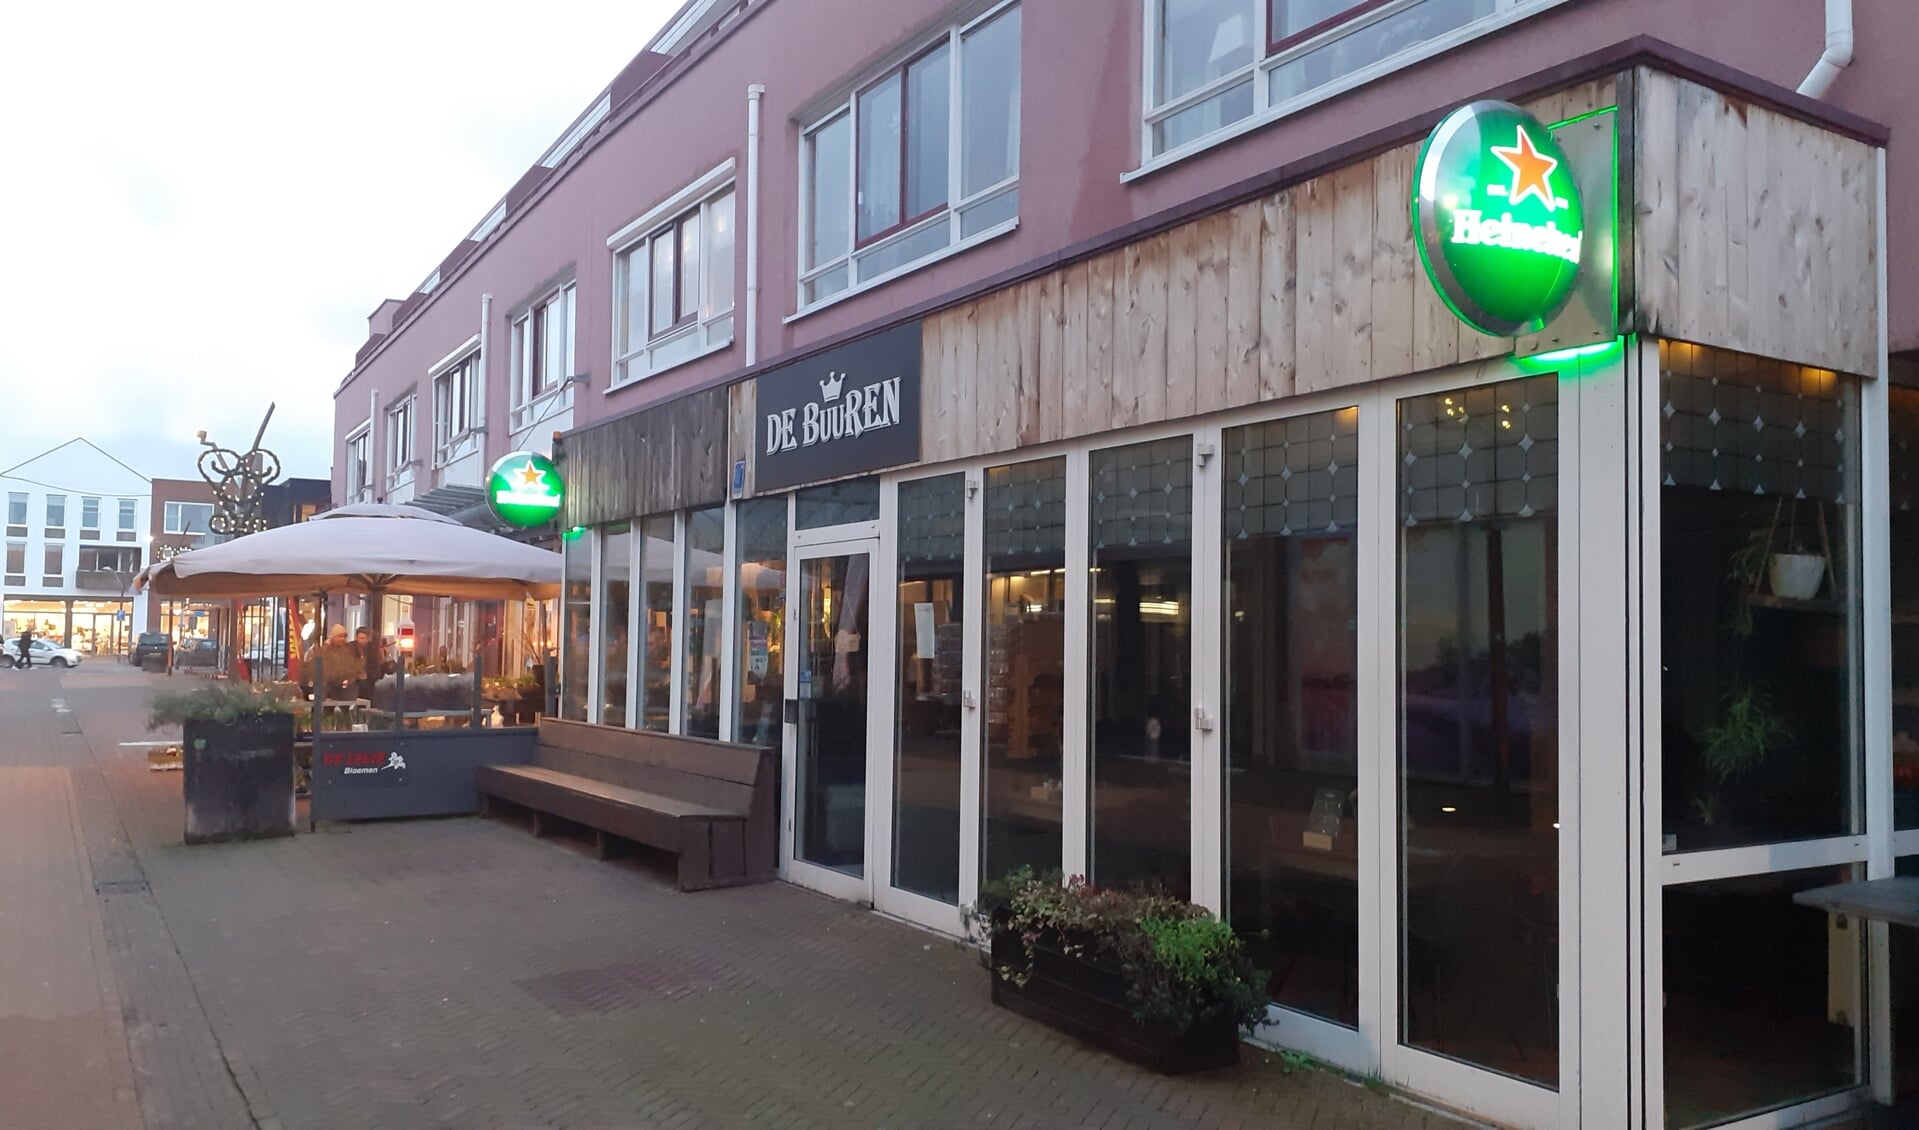 Grand Café de Buuren heeft de deuren definitief gesloten. 